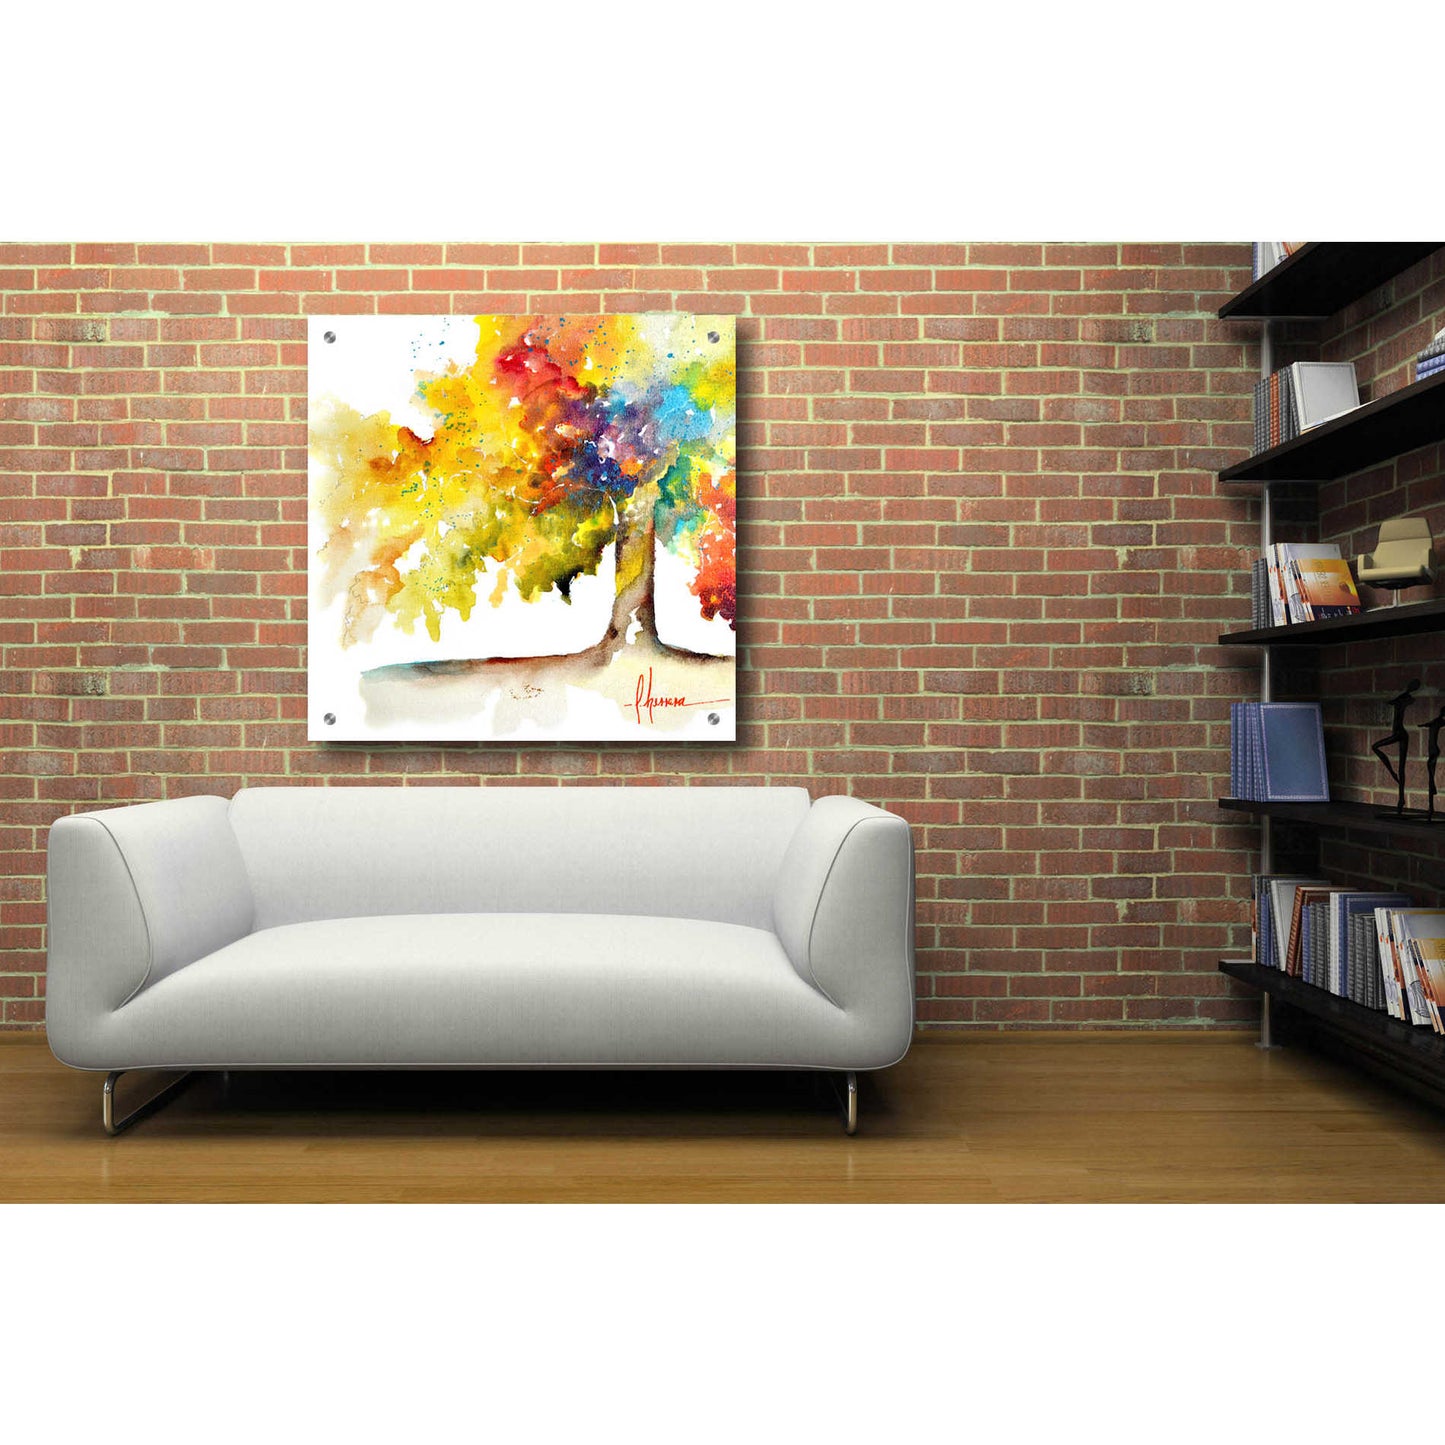 Epic Art 'Rainbow Trees I' by Leticia Herrera, Acrylic Glass Wall Art,36x36